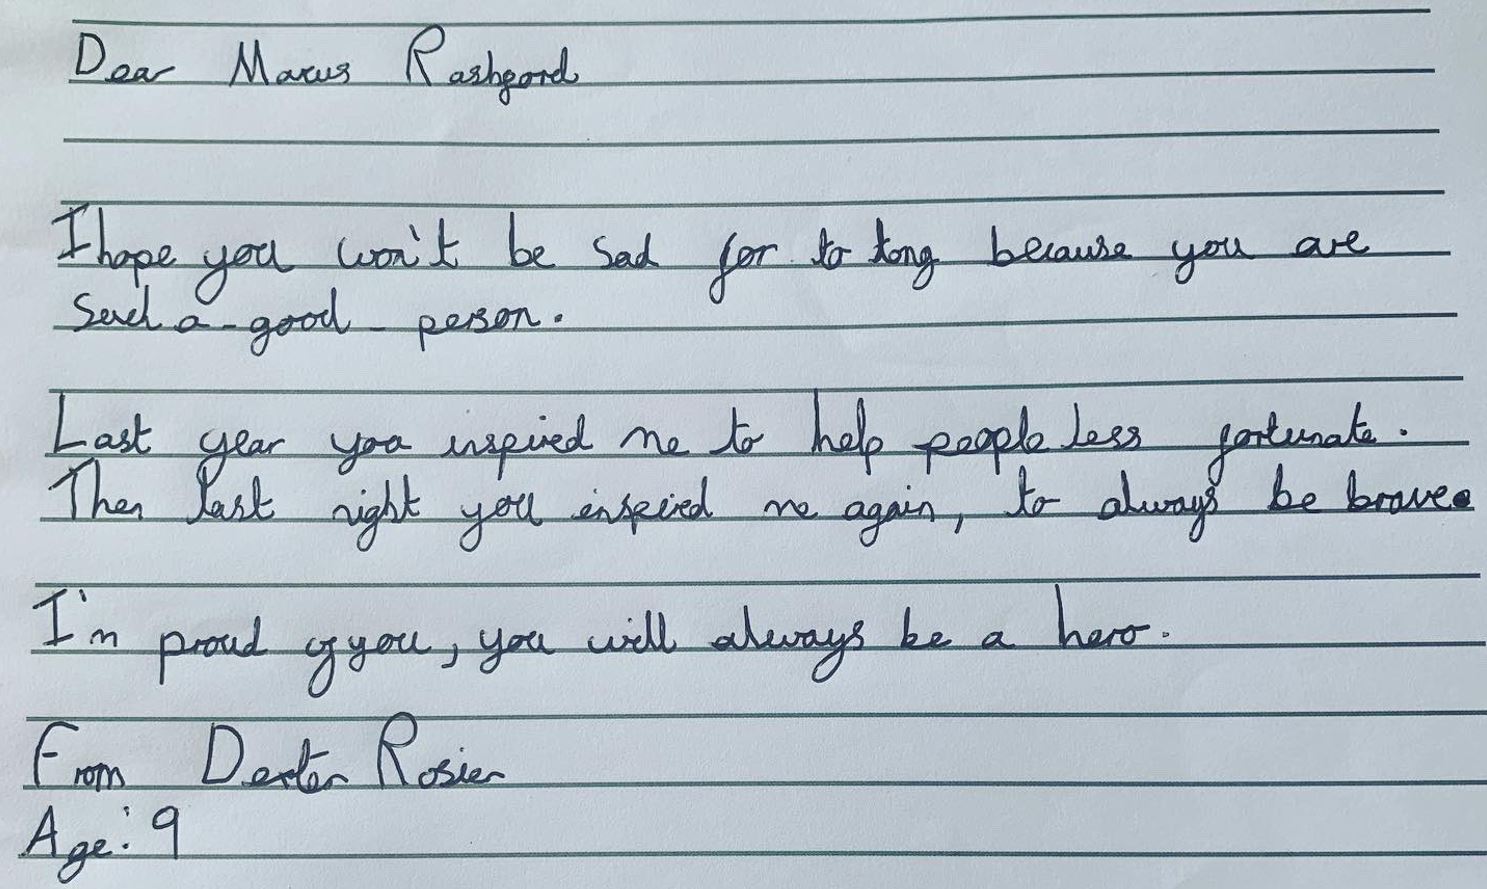 Letter to Marcus Rashford from Dexter Rosier - enlarge